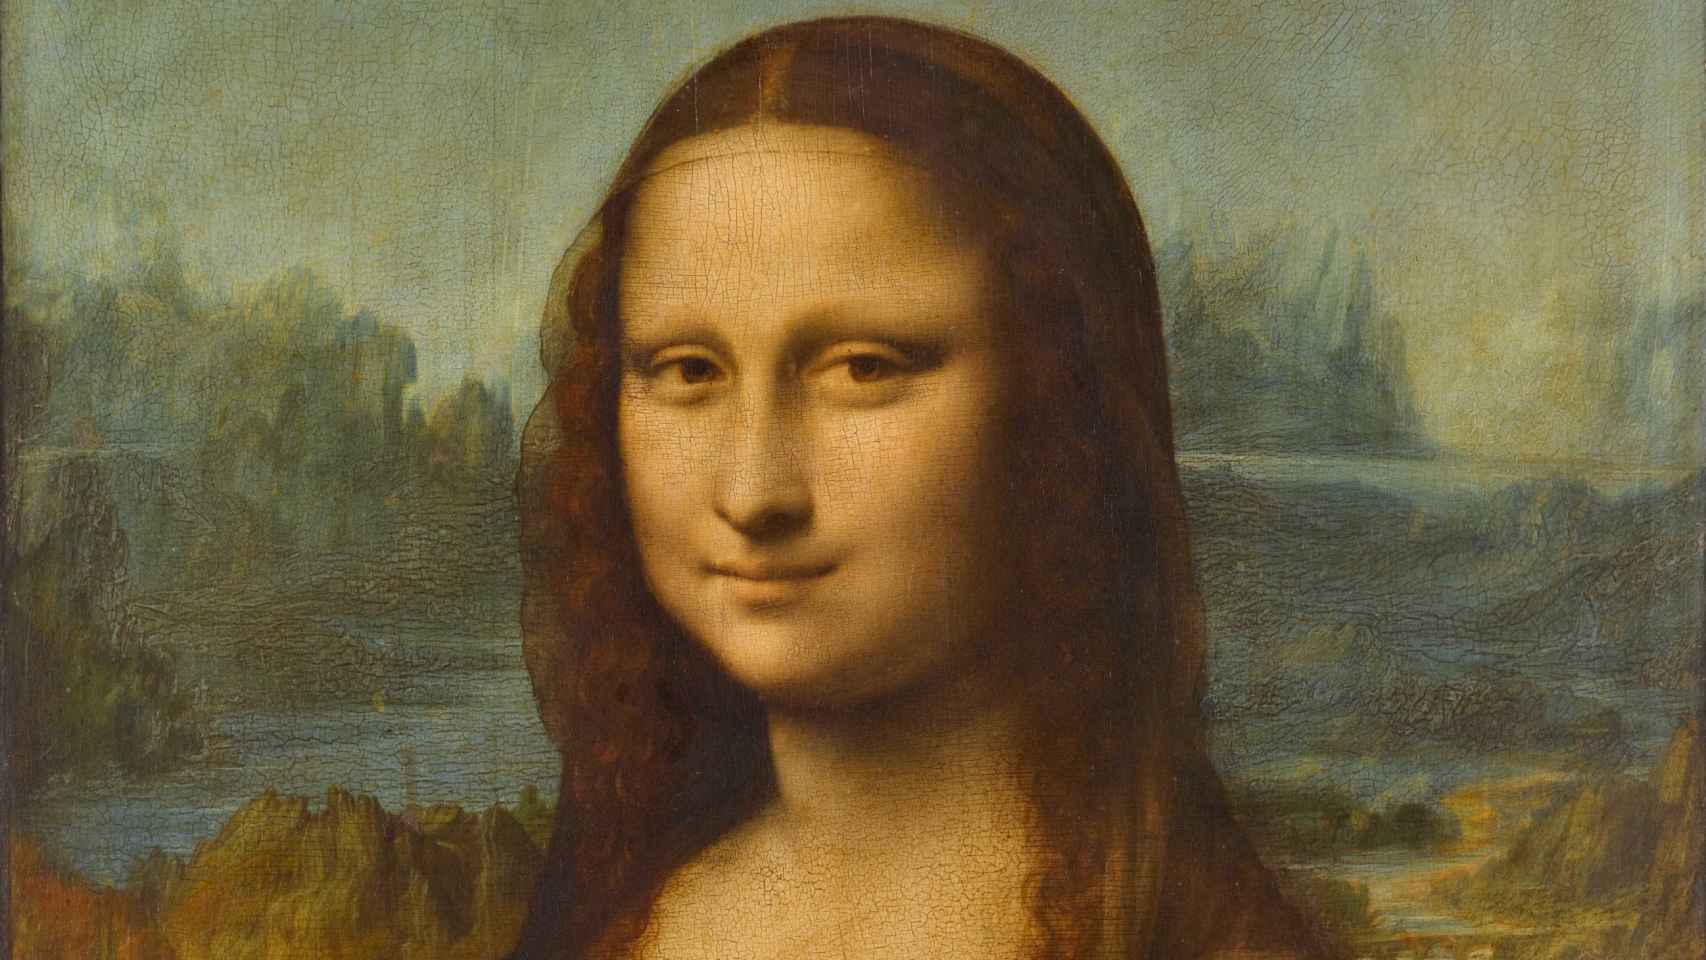 'La Gioconda' de Leonardo da Vinci, expuesta en el Museo del Louvre (París), es considerada una de las obras más importantes en la historia del arte